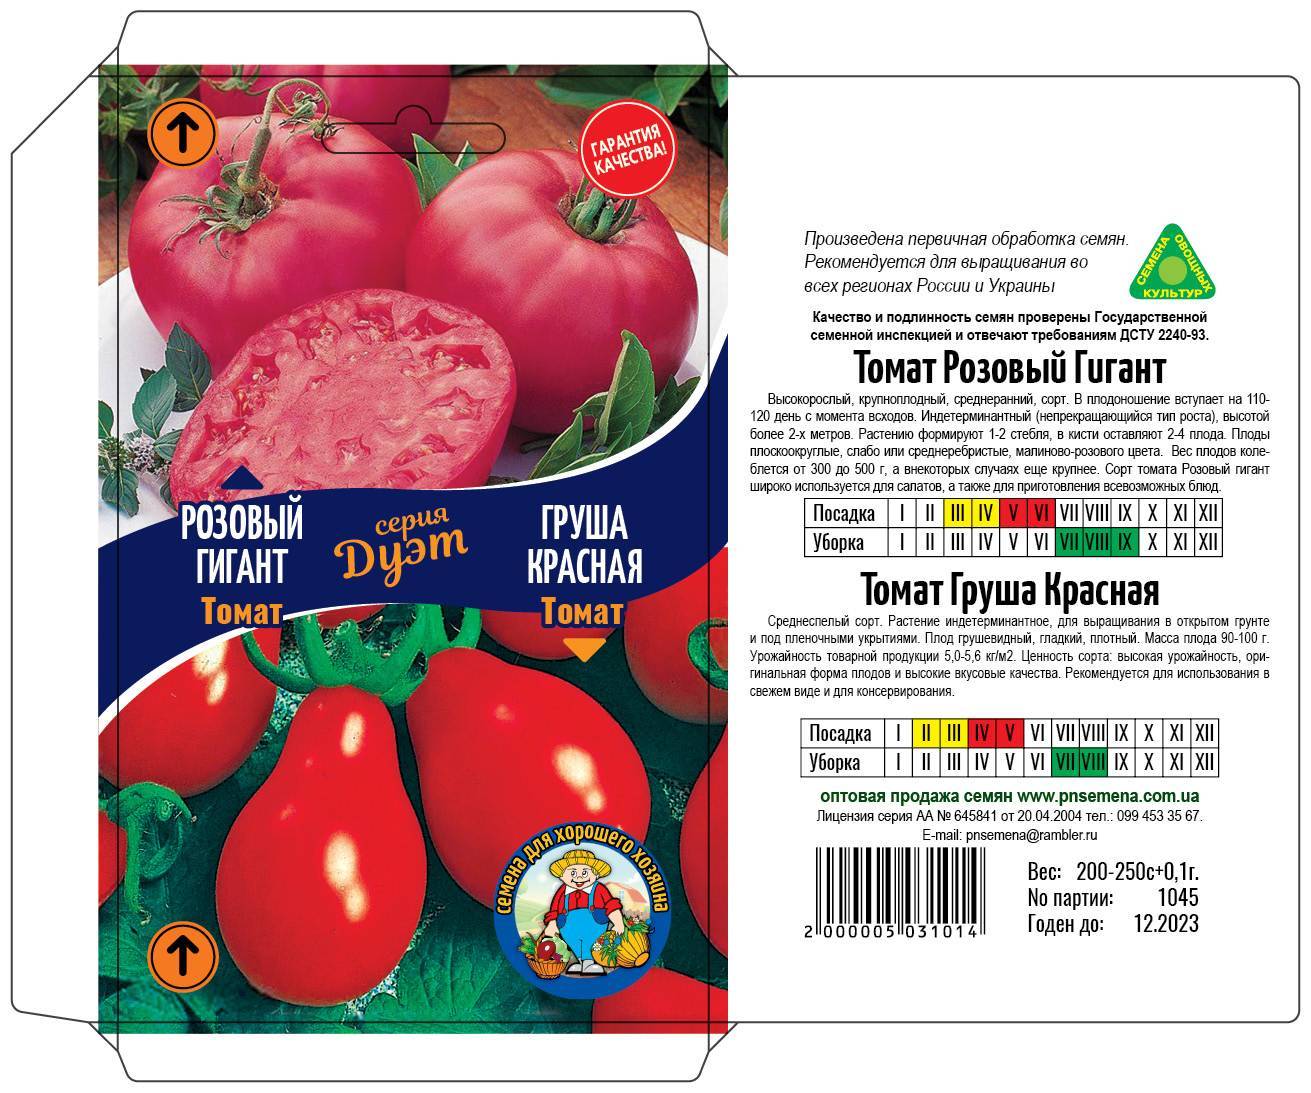 Описание и характеристики лучших индетерминантных сортов томатов для теплицы